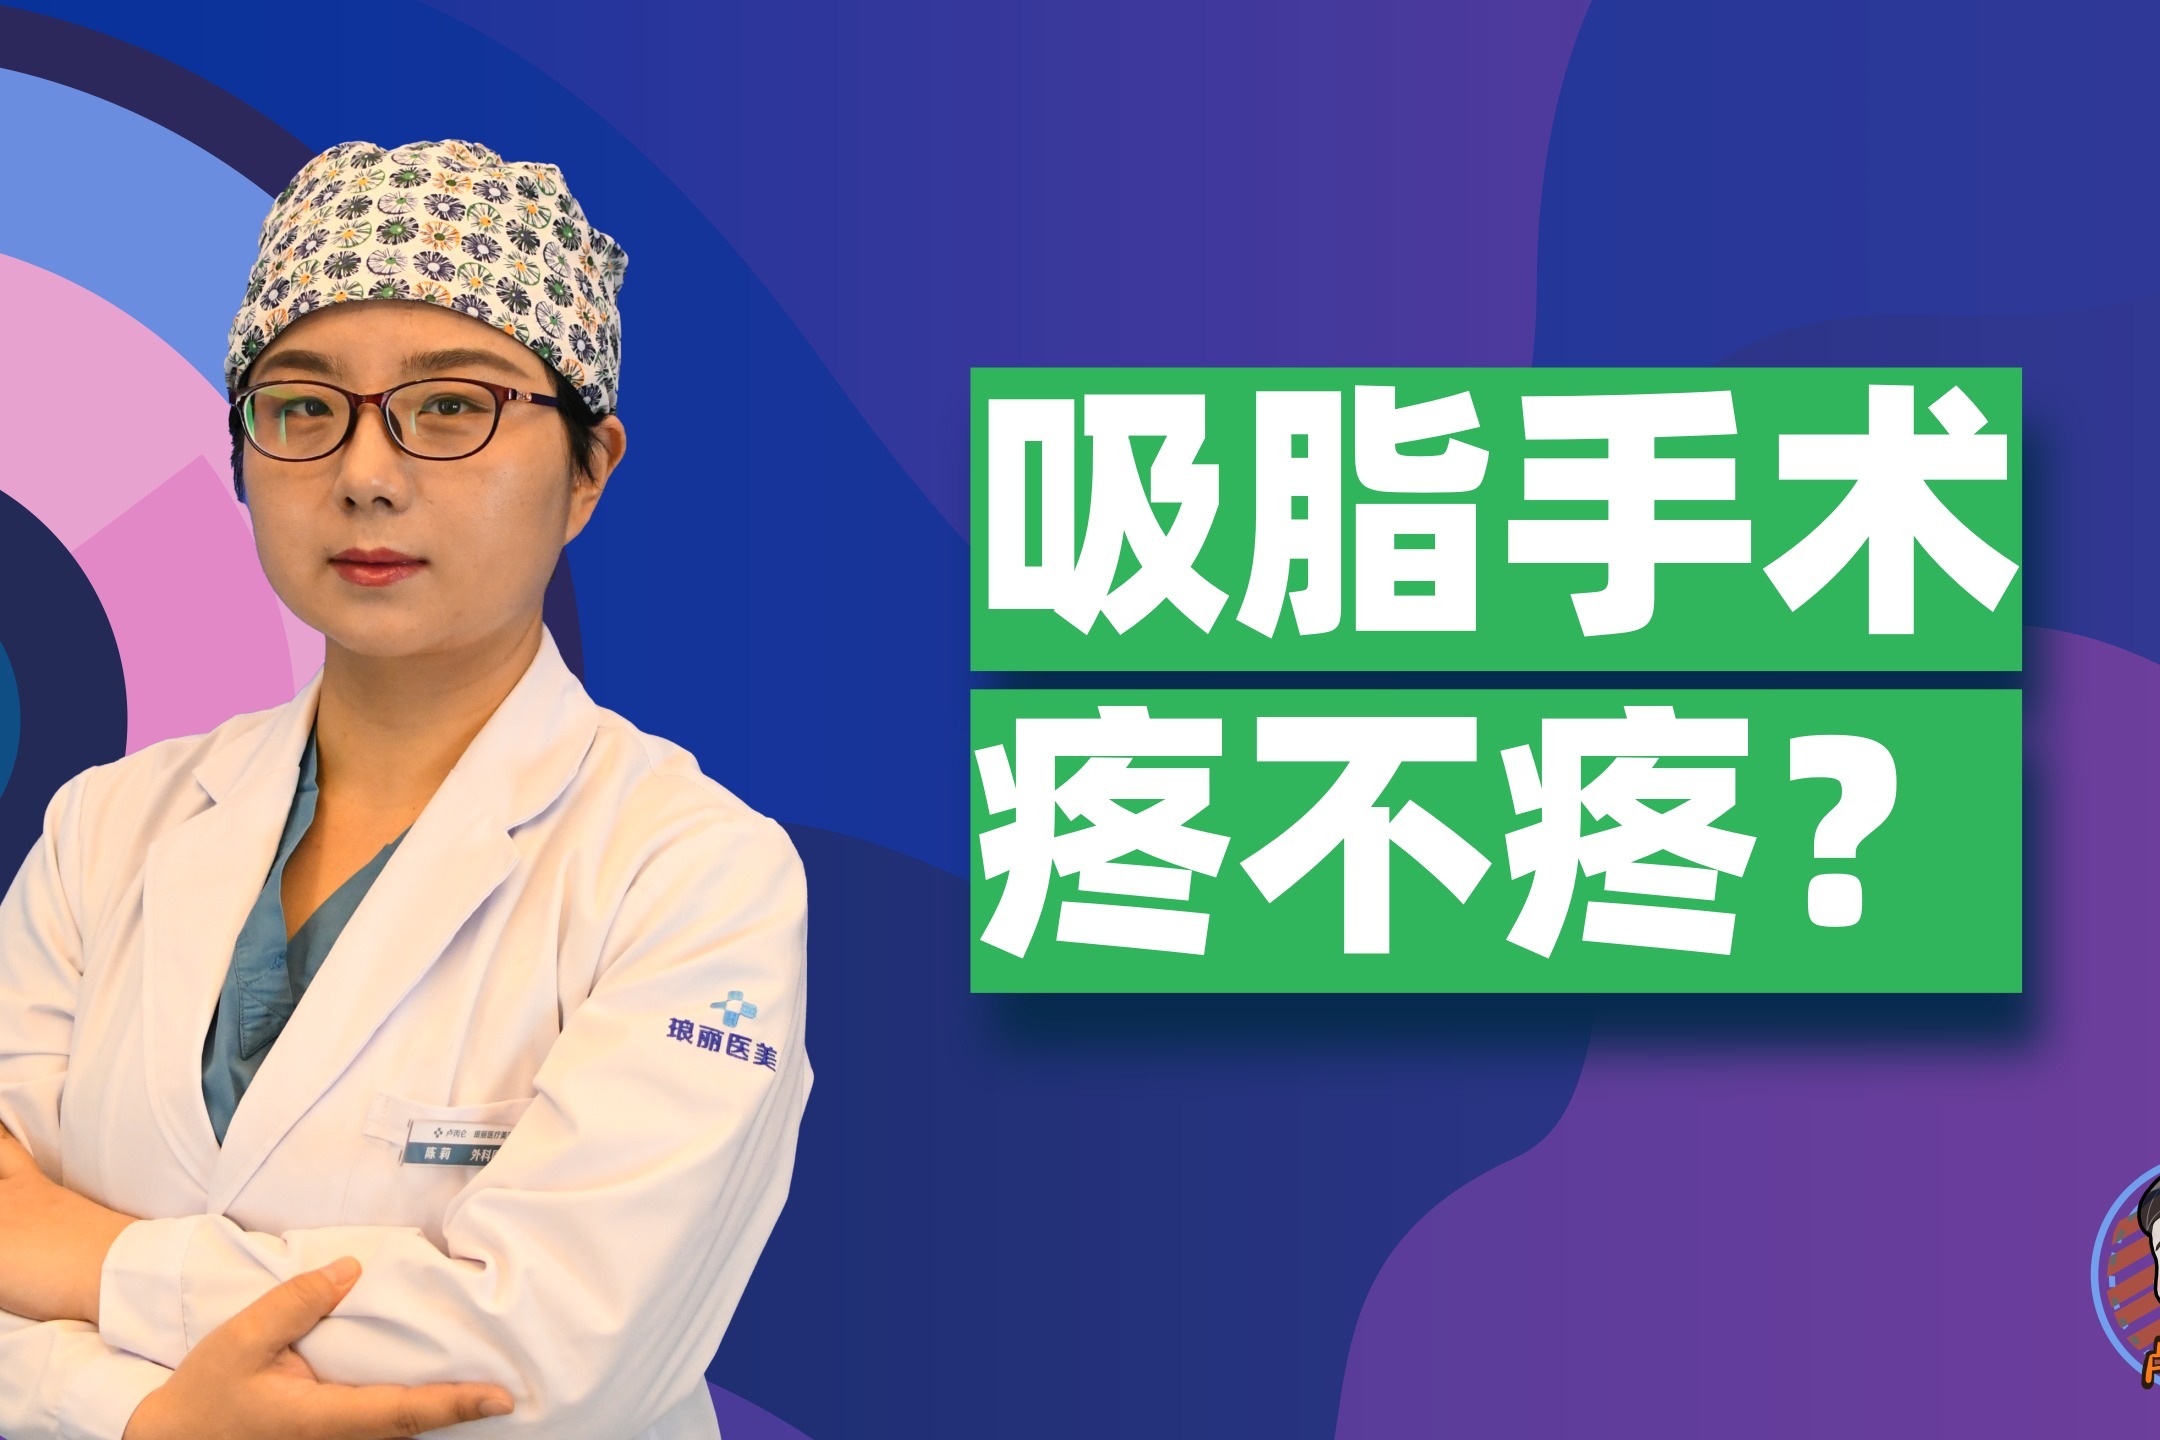 杭州哪个医生做吸脂好？主要是腰腹、大腿、面部吸脂领域的，最近天气凉爽，有考虑做吸脂塑形手术。 - 知乎